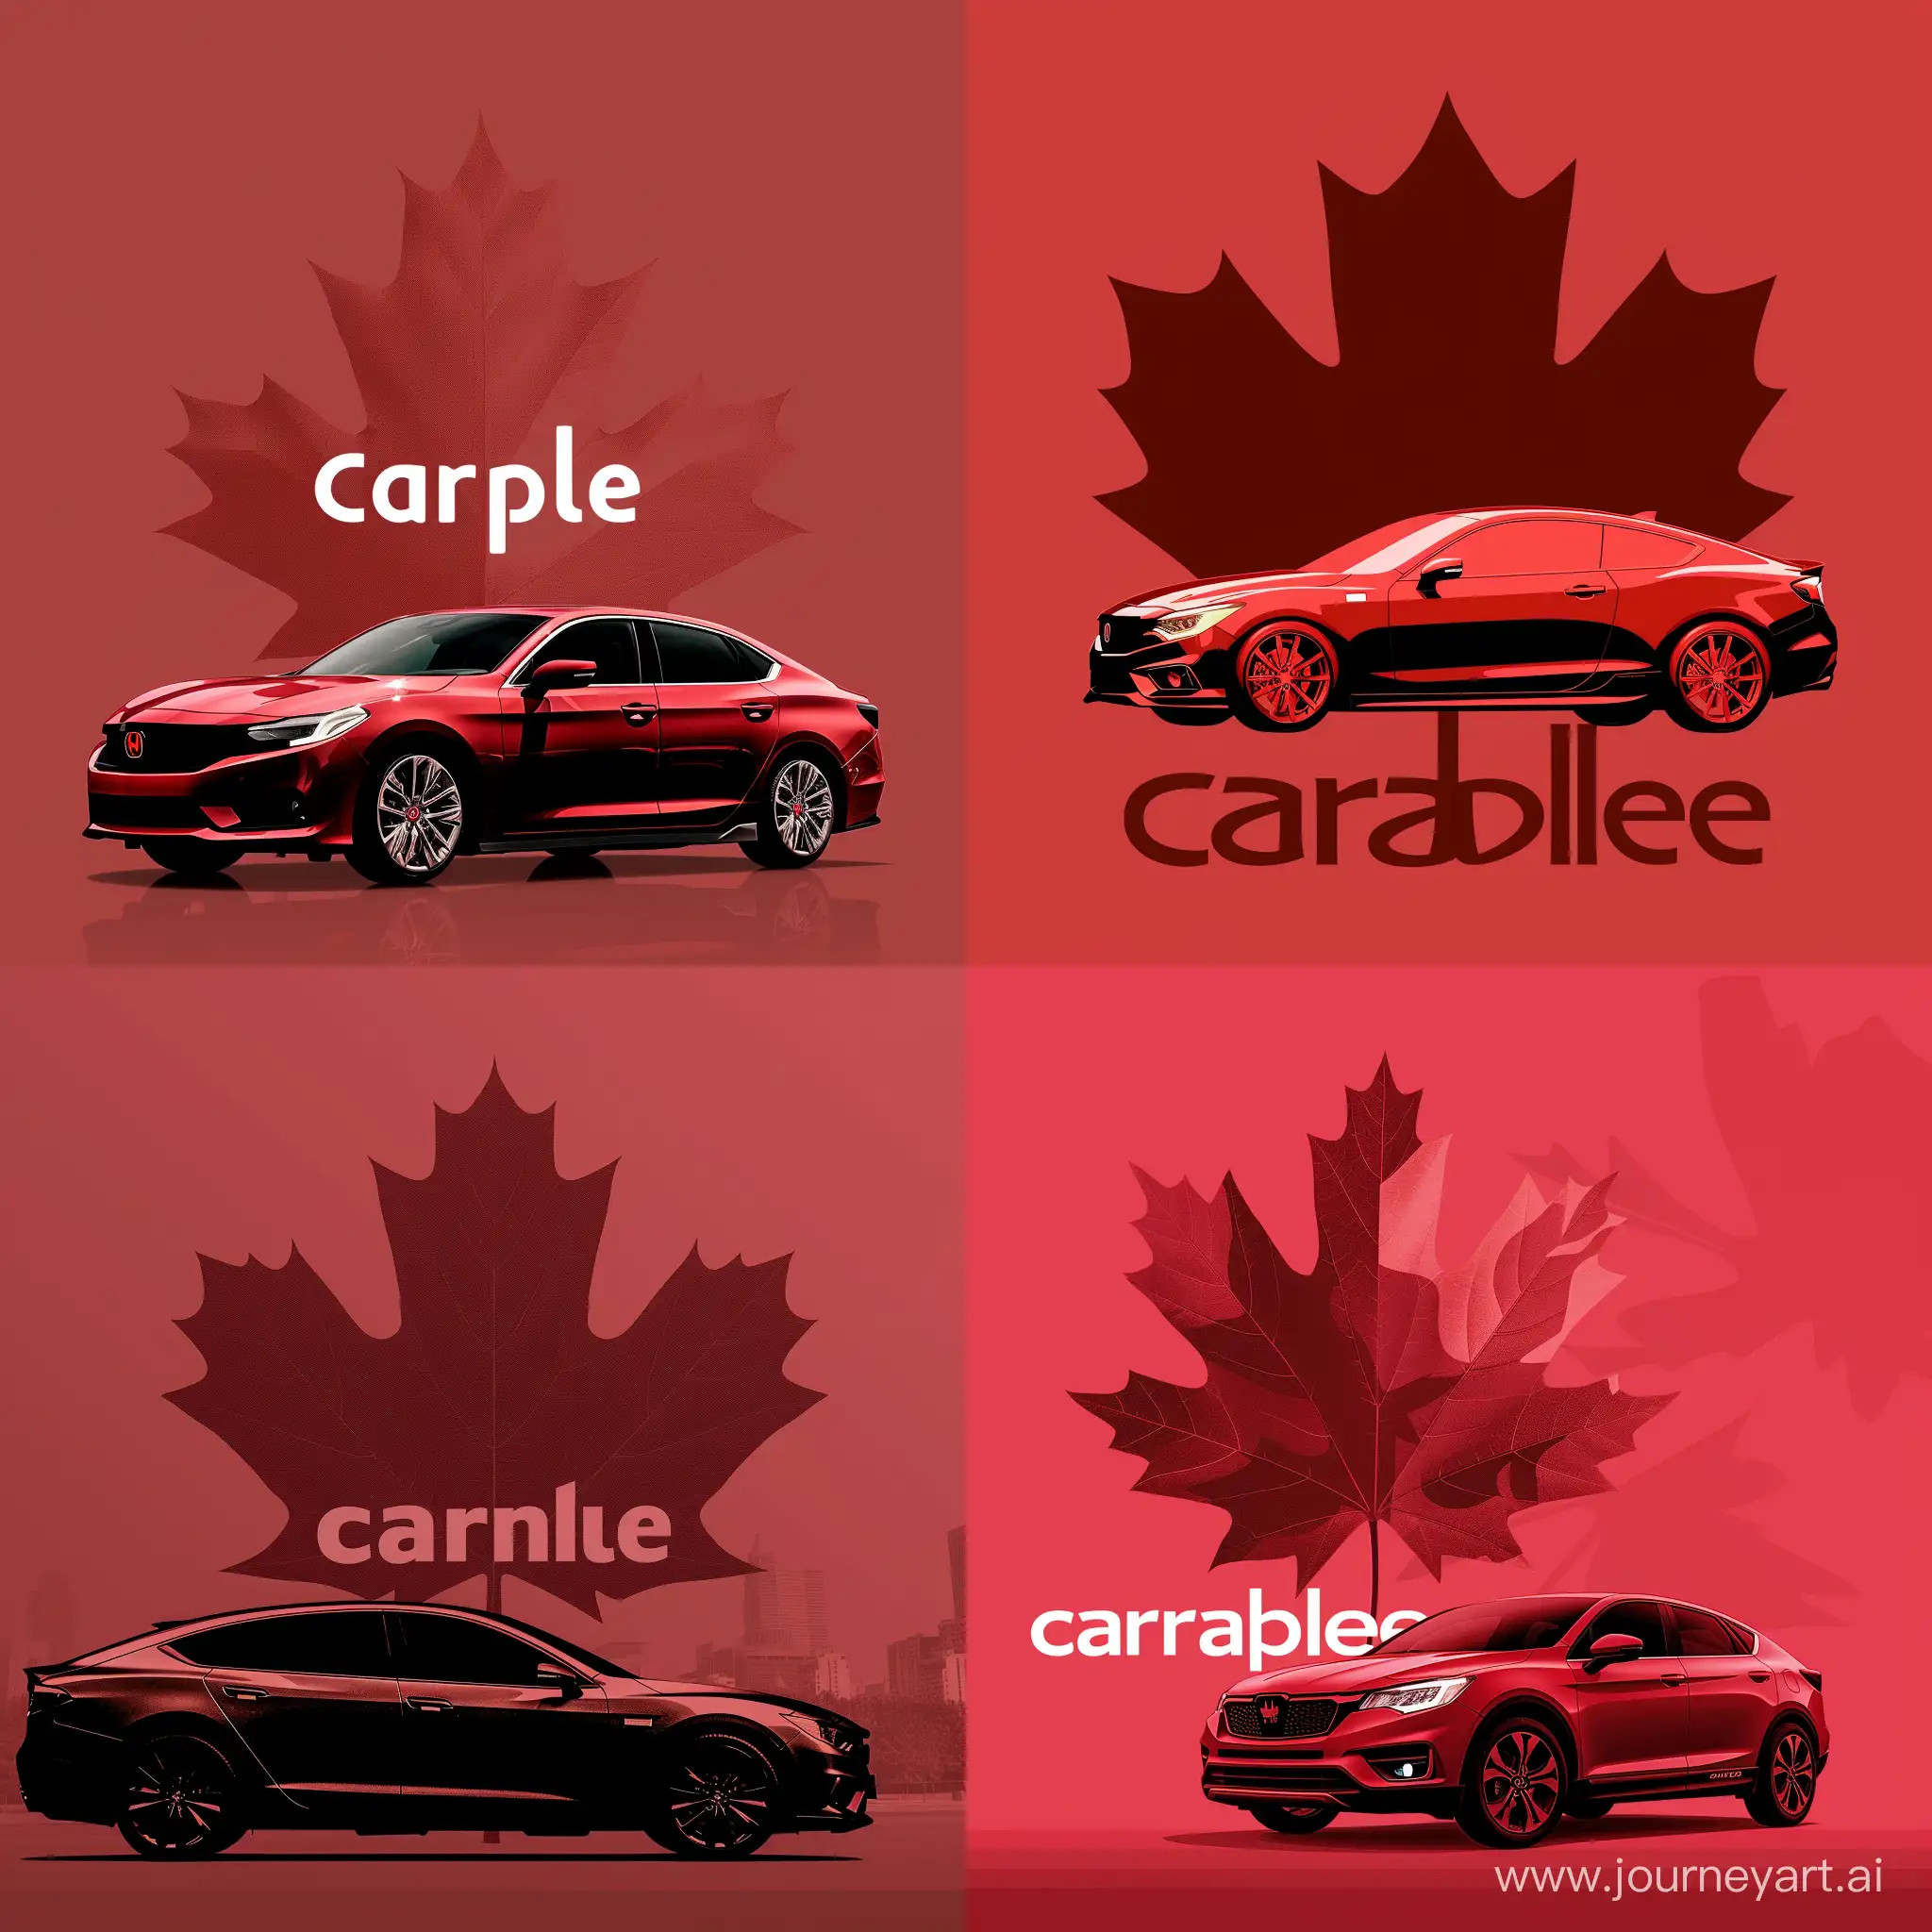 Логотип компании CarMaple, автомобиль, большой кленовый лист на фоне, в красных тонах, реалистично, эпично, минимализм